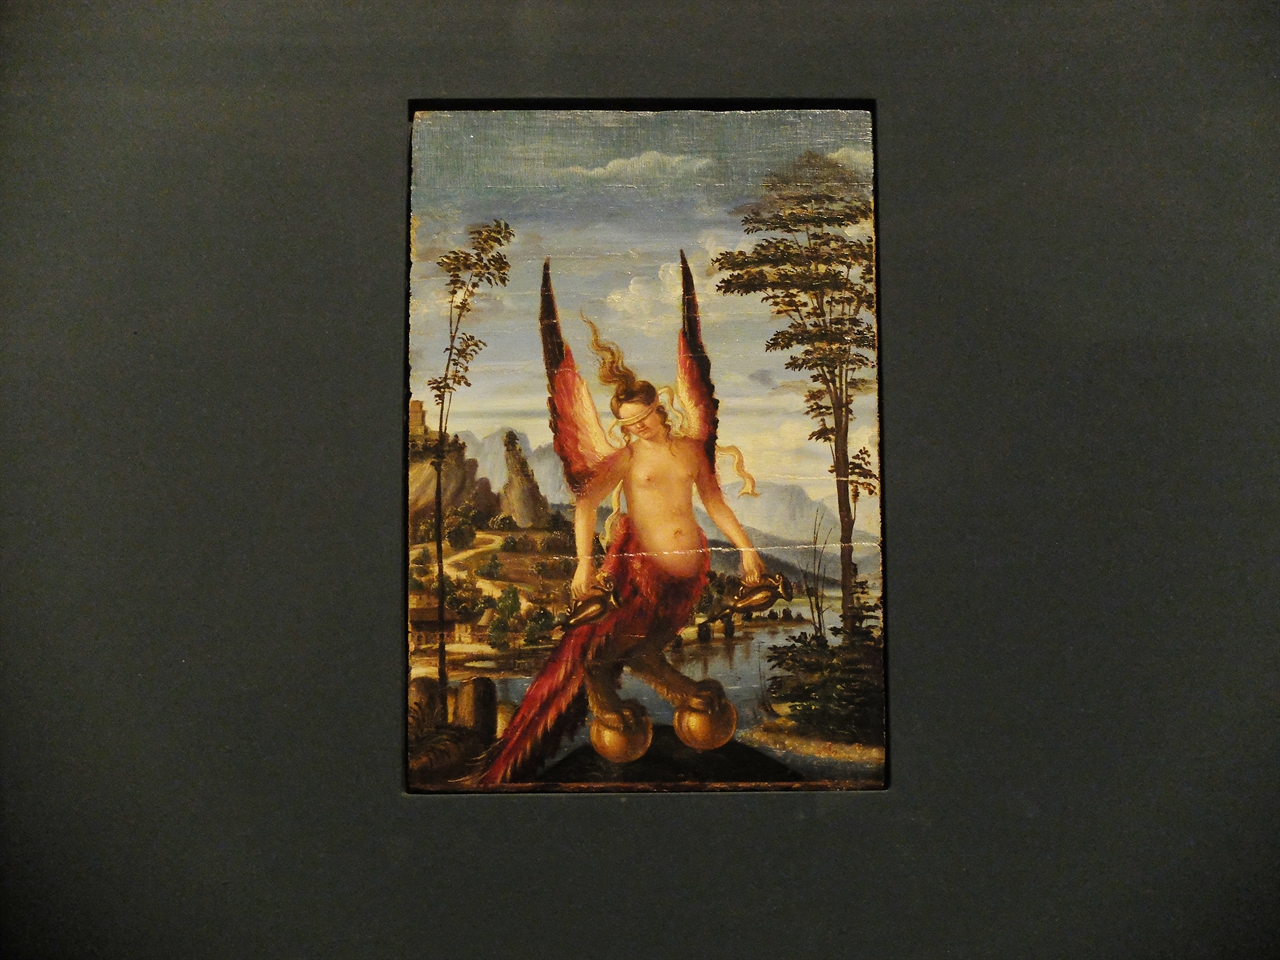 조반니 벨리니(또는 안드레아 프레비탈리), '행운의 알레고리', 베네치아 아카데미아 미술관.  
